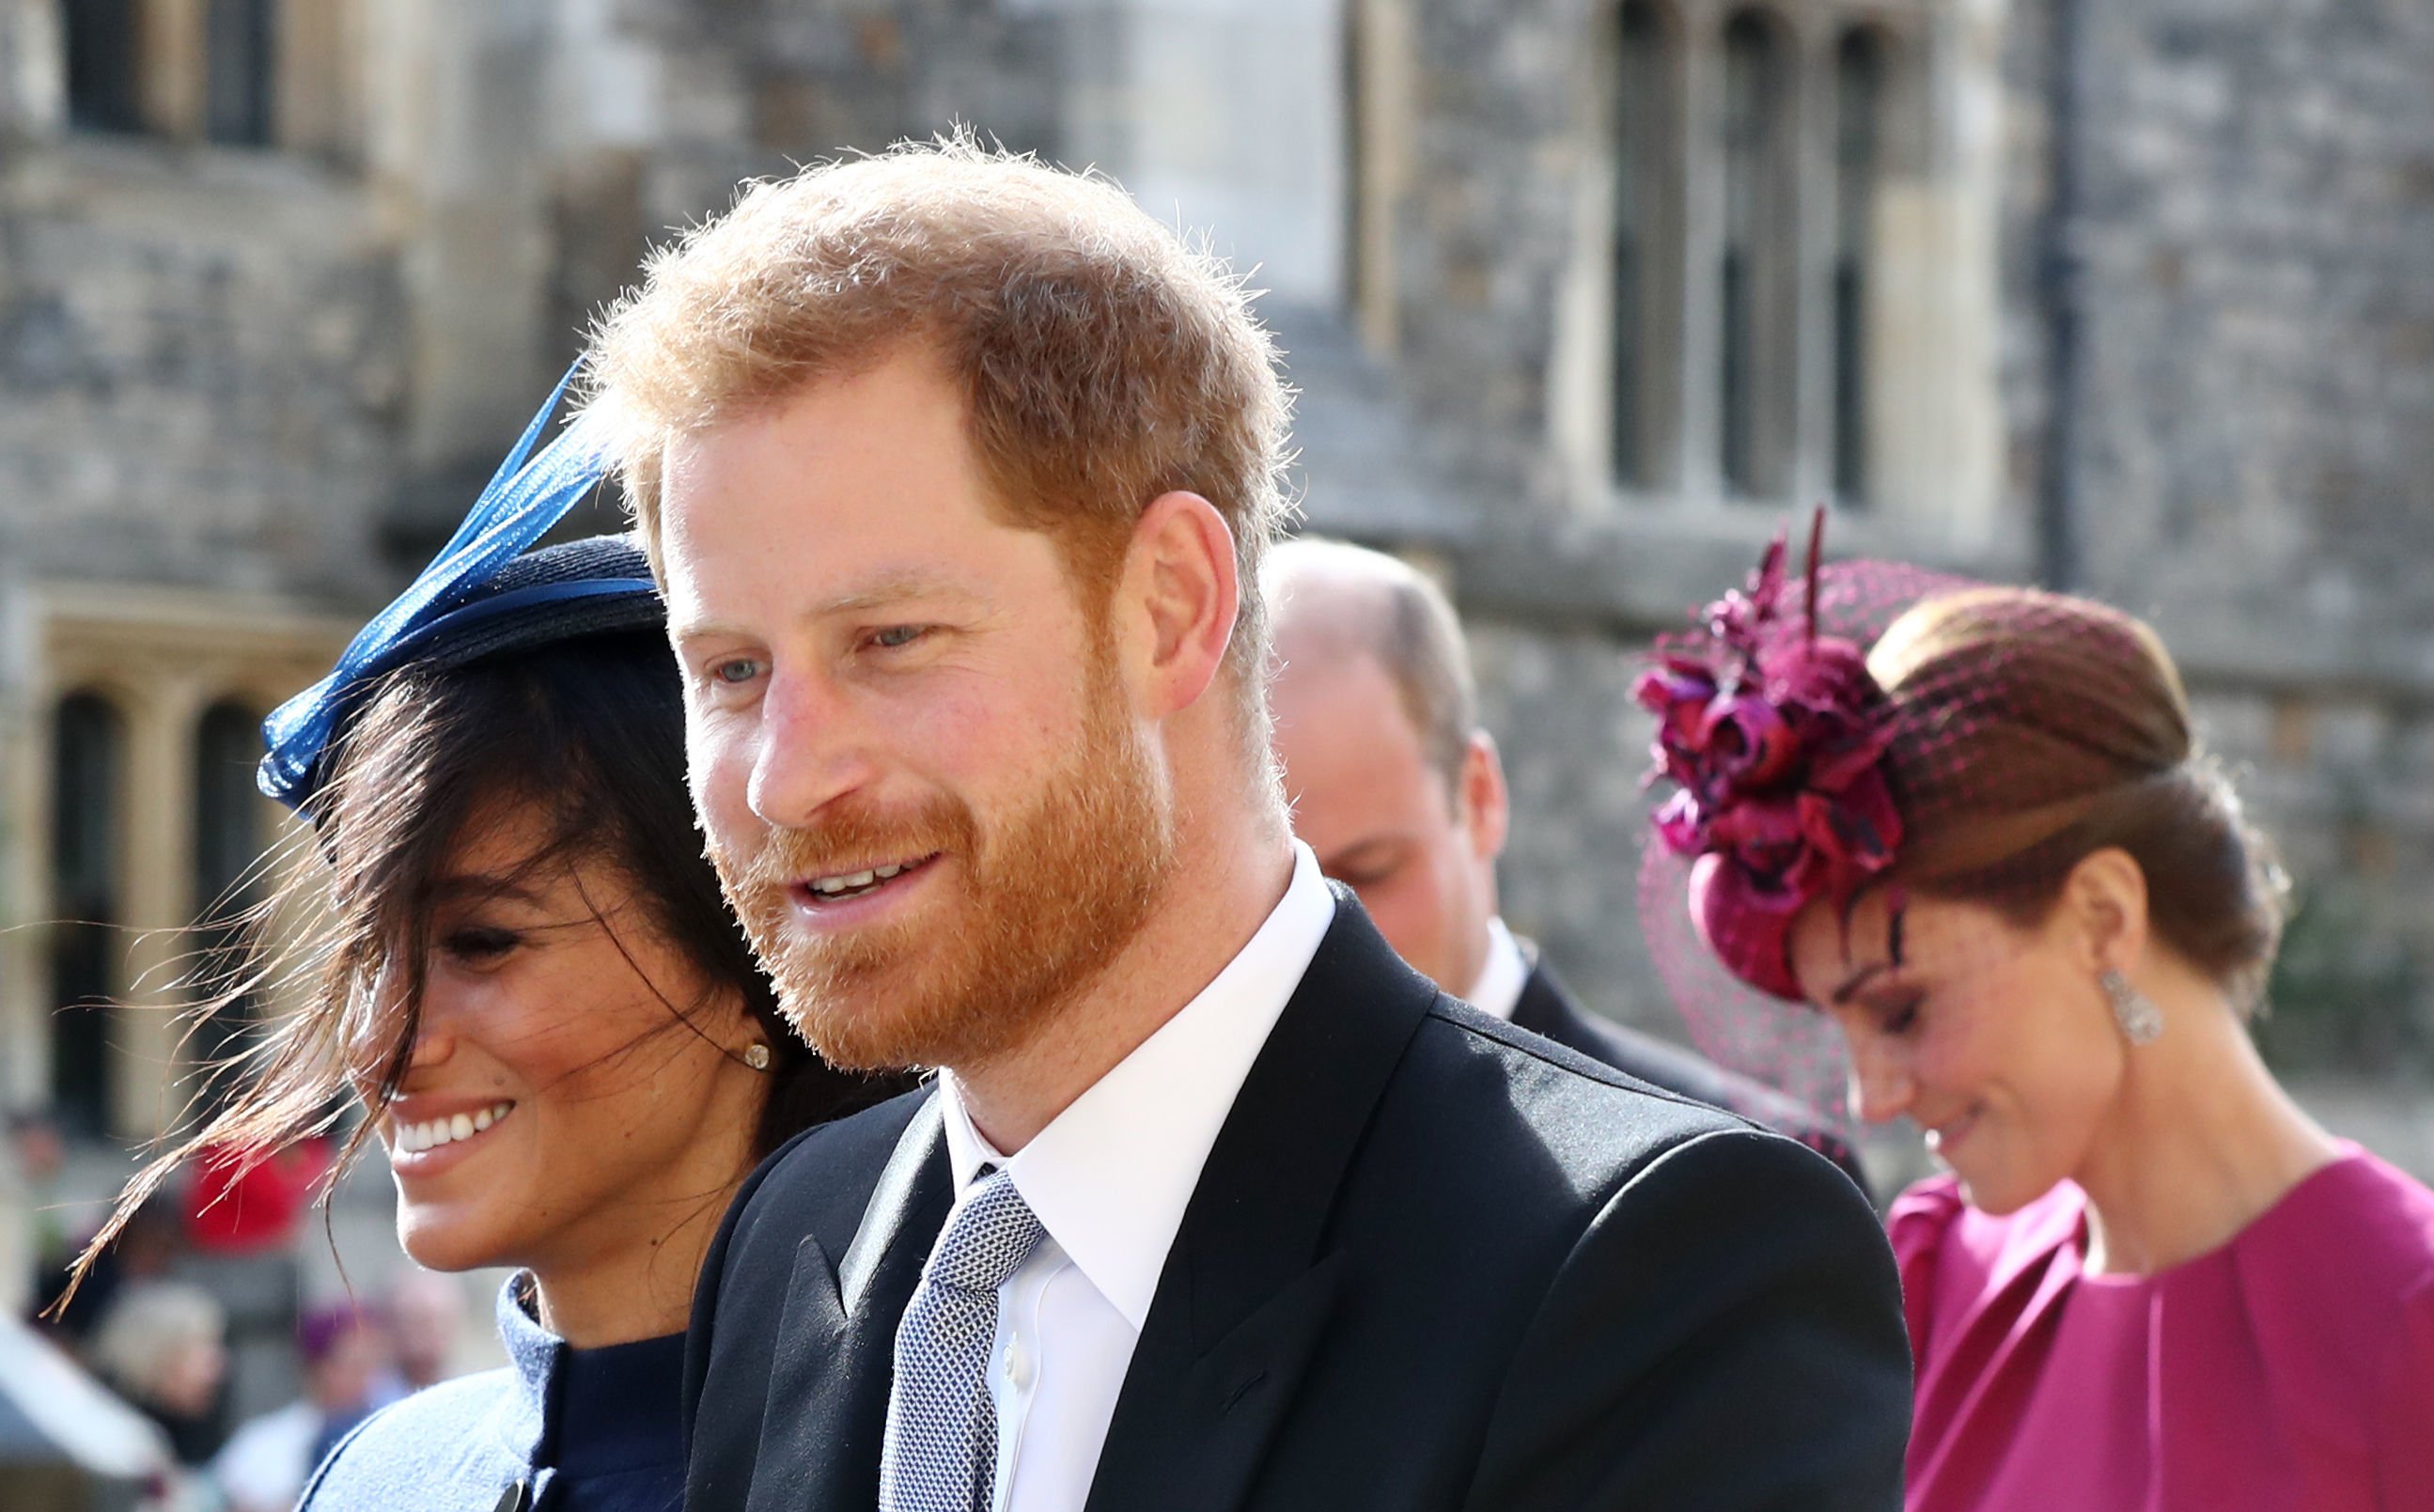 Le prince Harry et Meghan Markle photographiés quittant avec Kate Middleton et le prince William après avoir assisté au mariage de la princesse Eugénie d'York et de Jack Brooksbank à la chapelle Saint-Georges du château de Windsor, le 12 octobre 2018 à Windsor. | Source : Getty Images